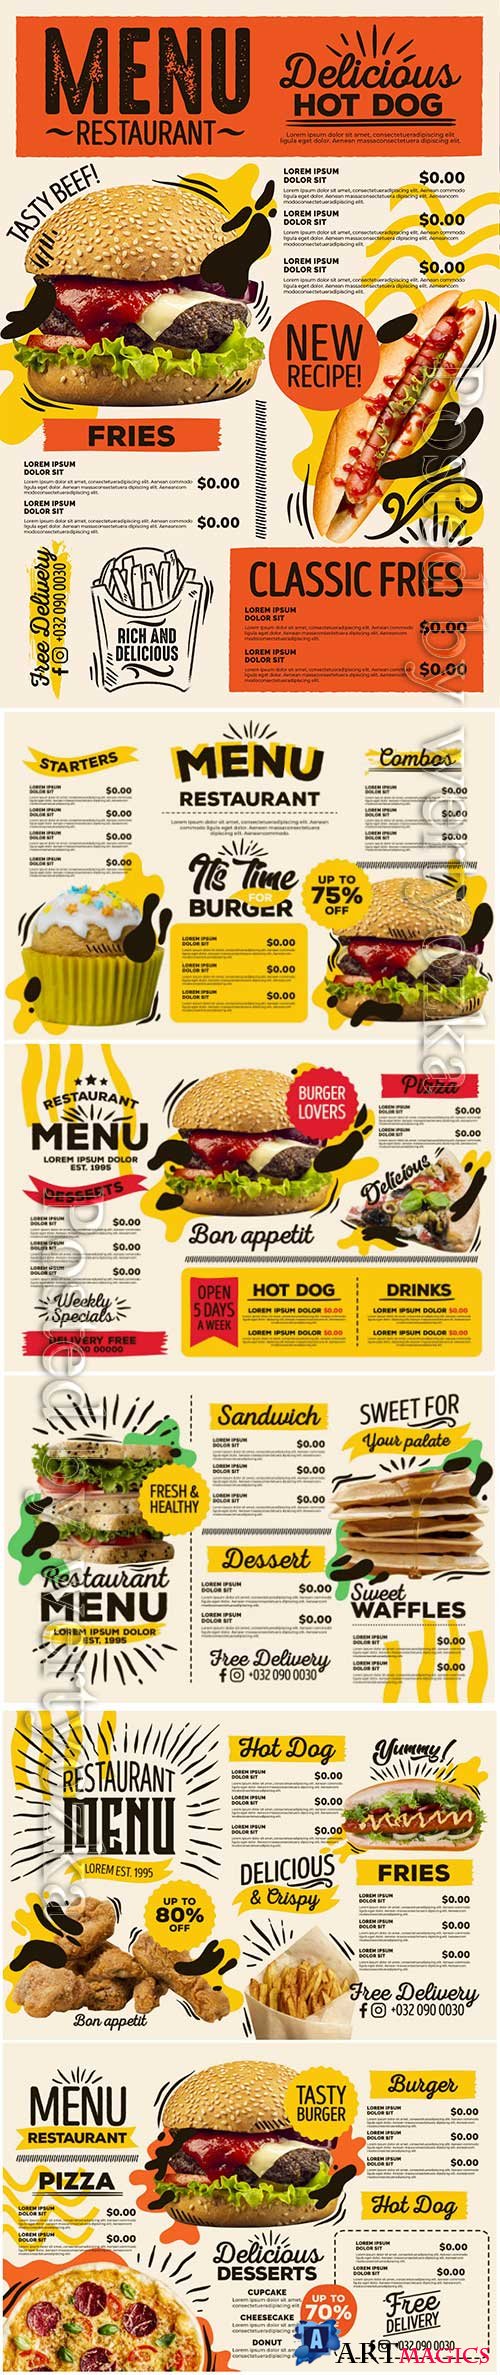 Digital restaurant menu fast food delivery